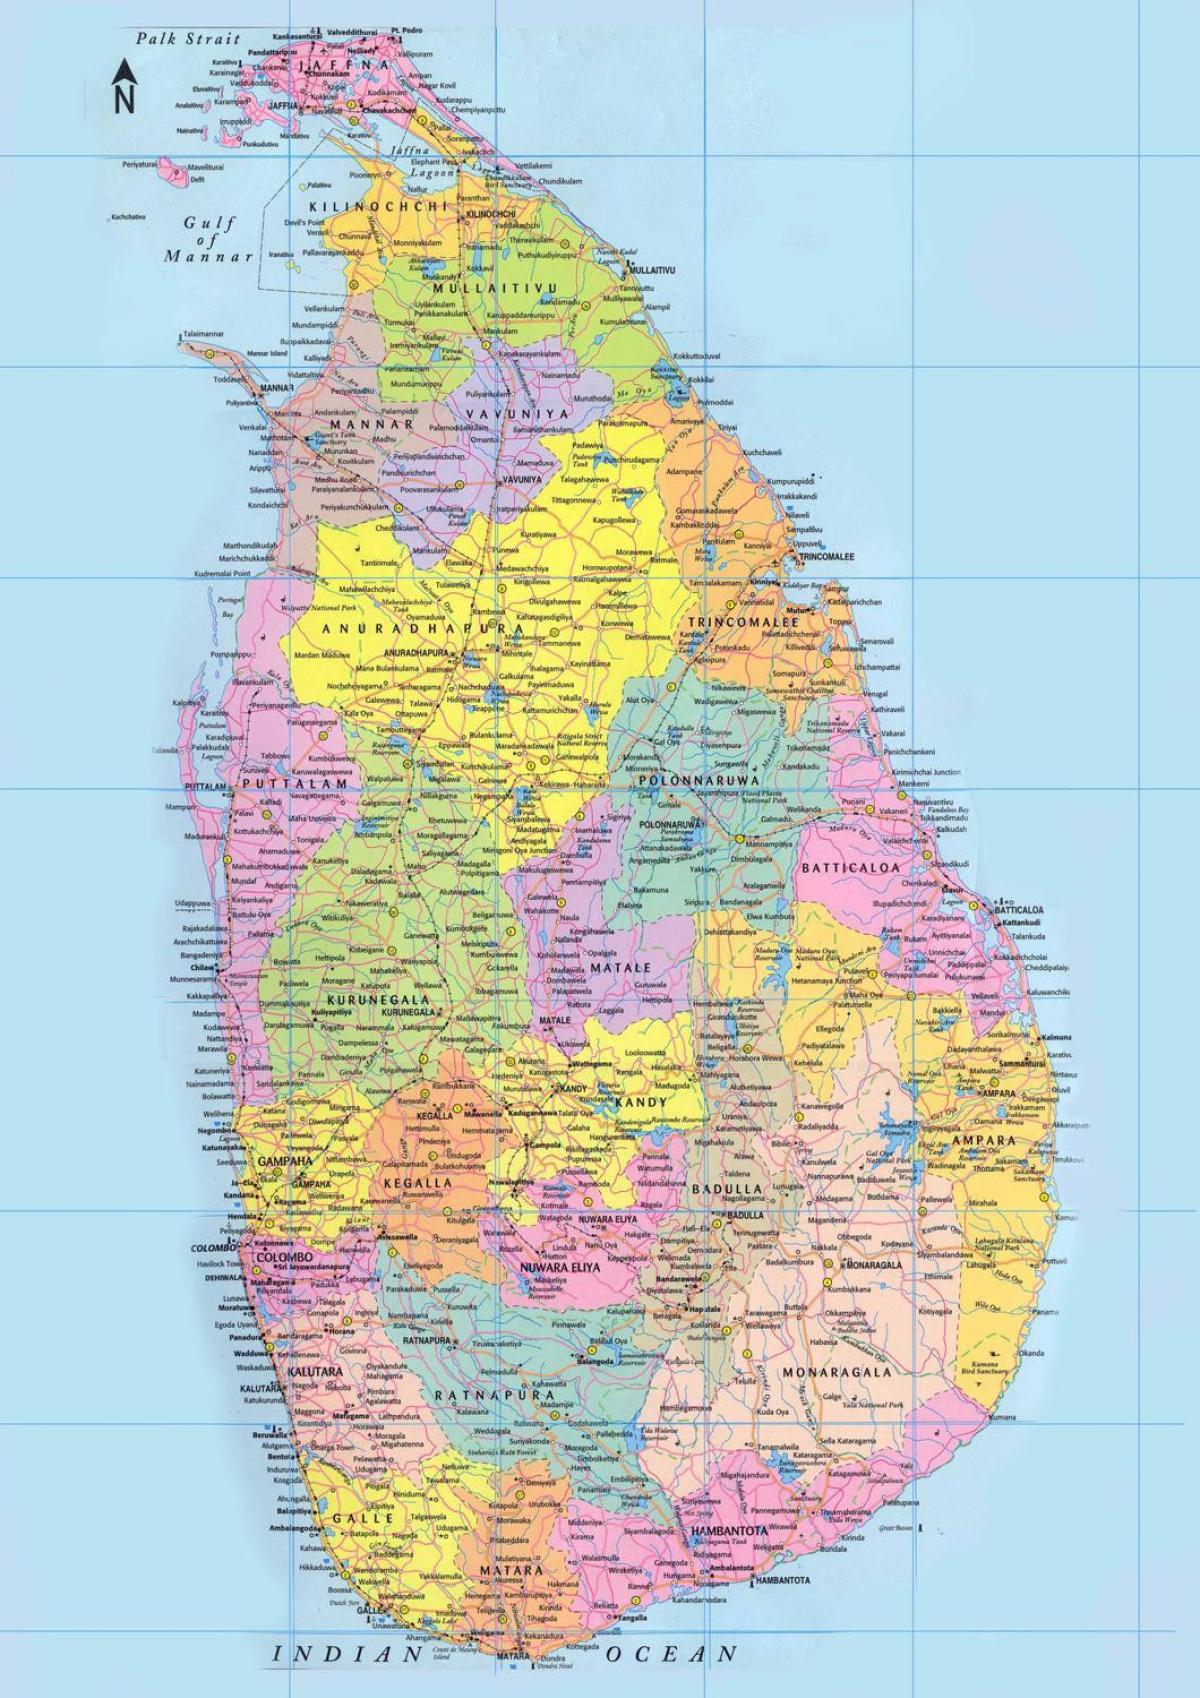 Sri Lanka hartën e rrugës largësia km